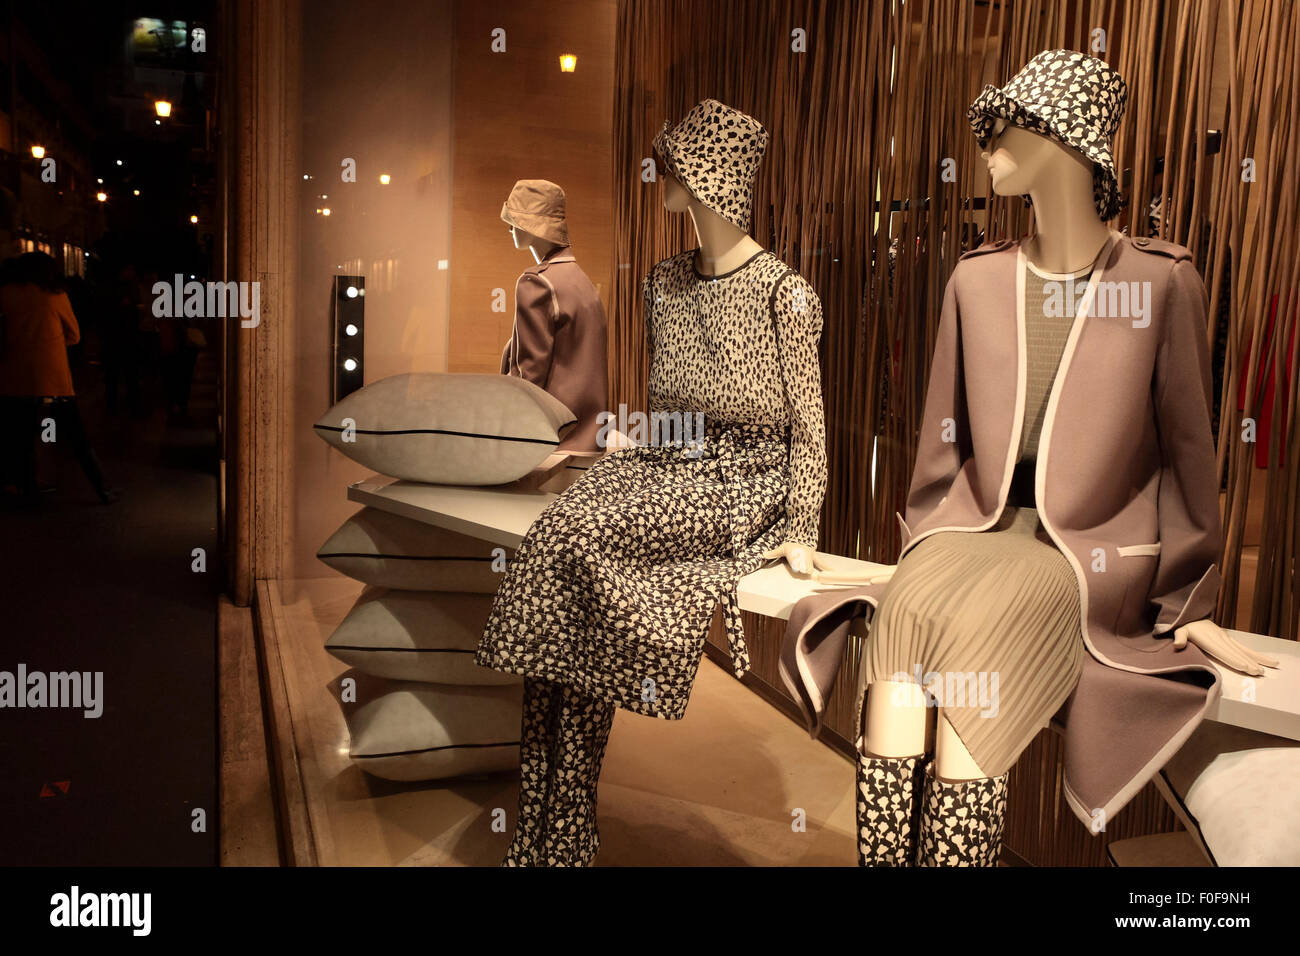 La nuit, la fenêtre shopping dans une boutique de mode haut de gamme sur via Condotti, Rome, Italie. Banque D'Images